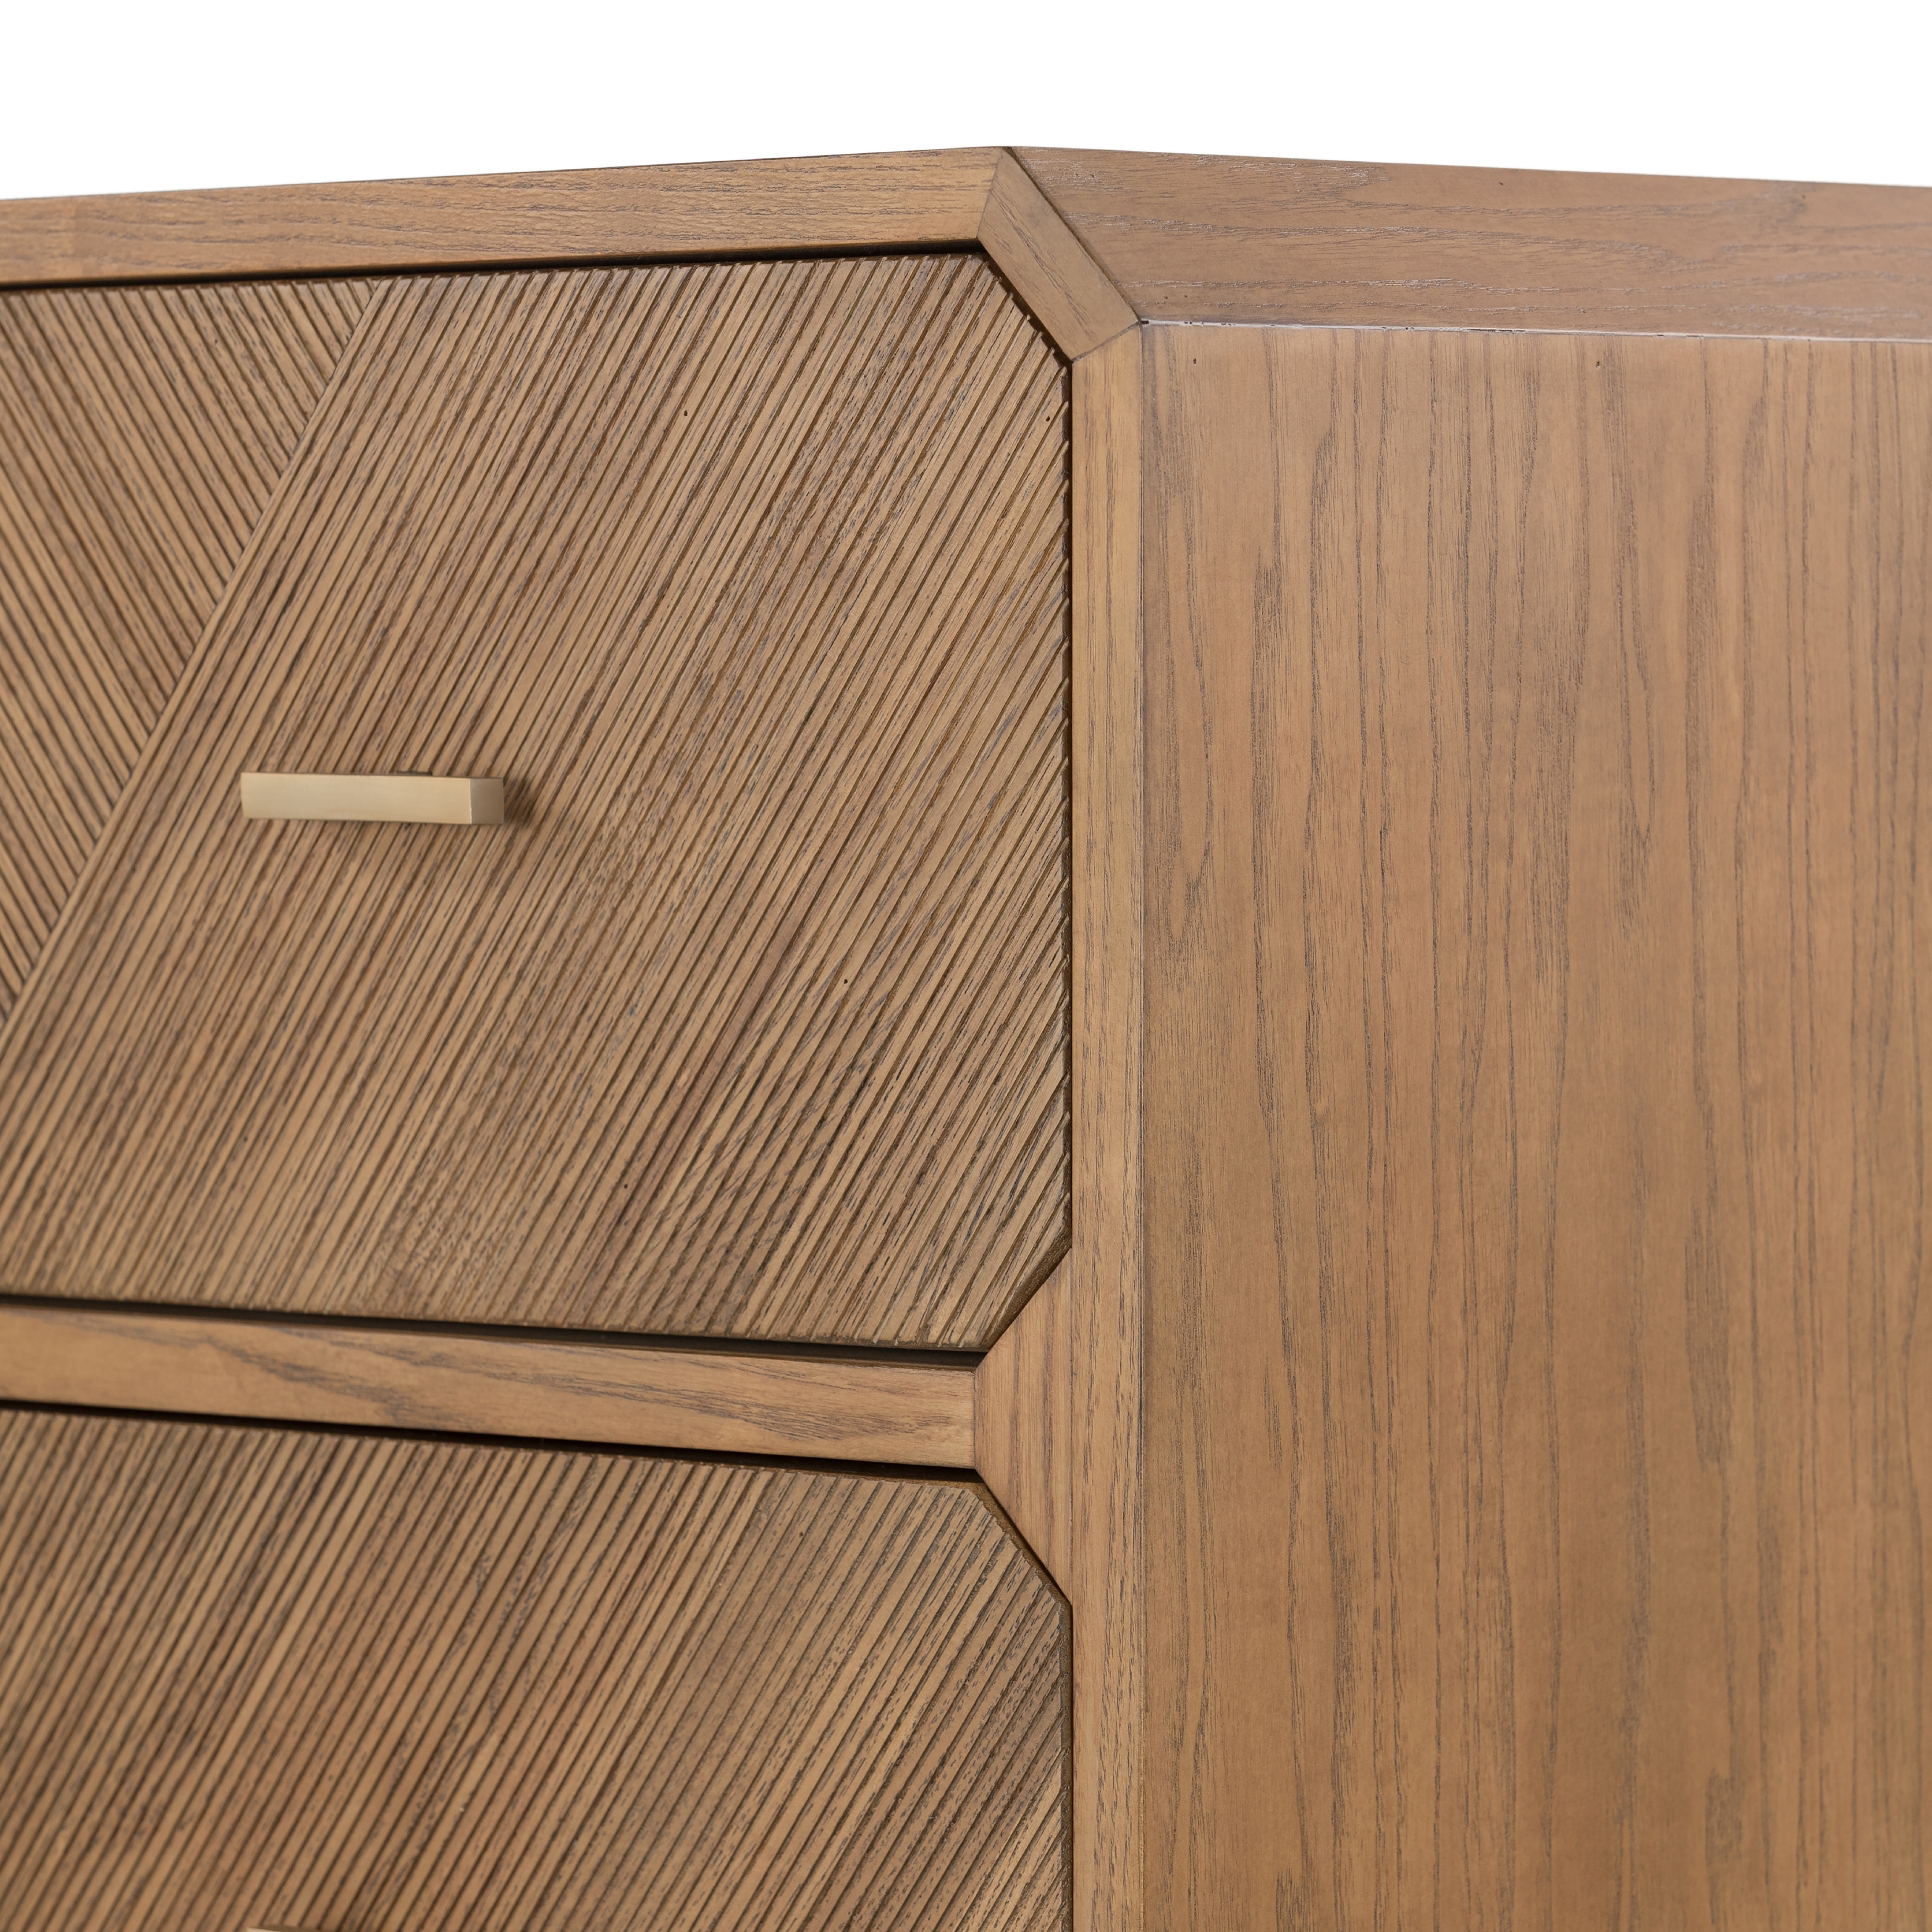 Caspian 4 Drawer Dresser - Natural Ash Veneer - Image 9